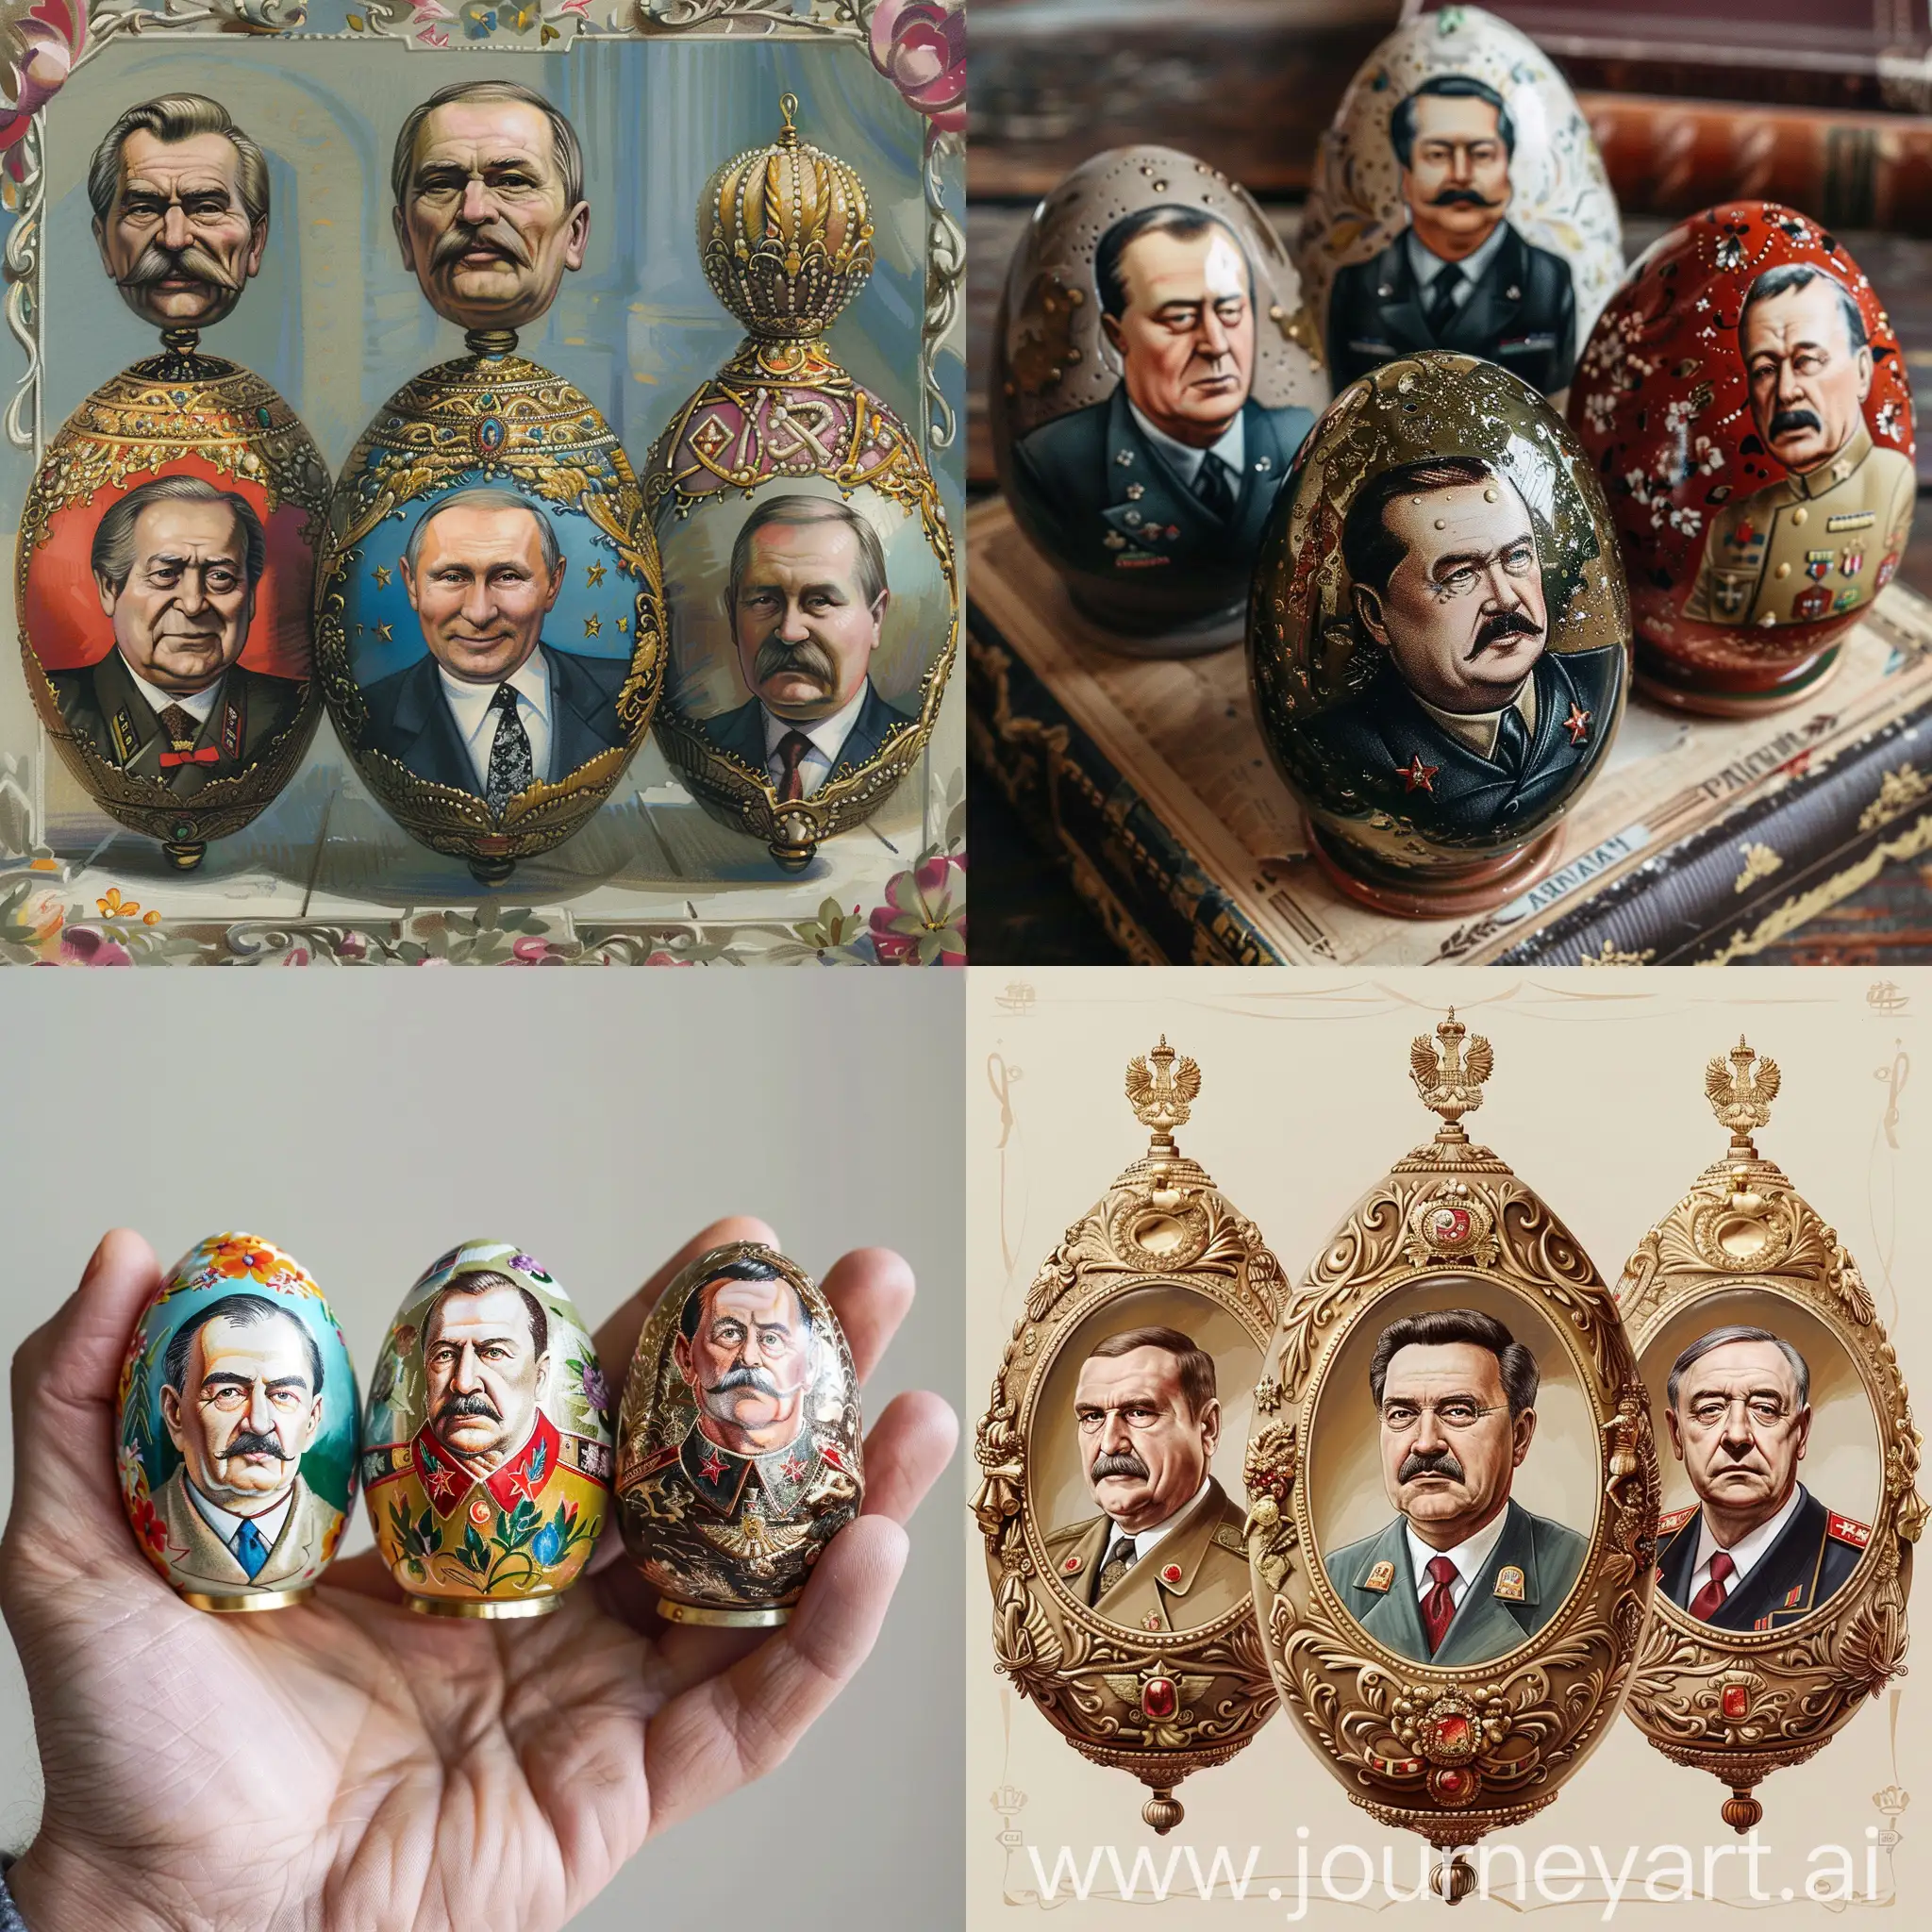 Нарисуй несколько яиц фаберже с ювелирными фигурками Чаушеску в одном, Сталина в другом и Путина в третьем, а также добавь ещё одного правителя из прошлого в четвёртом на свое усмотрение 